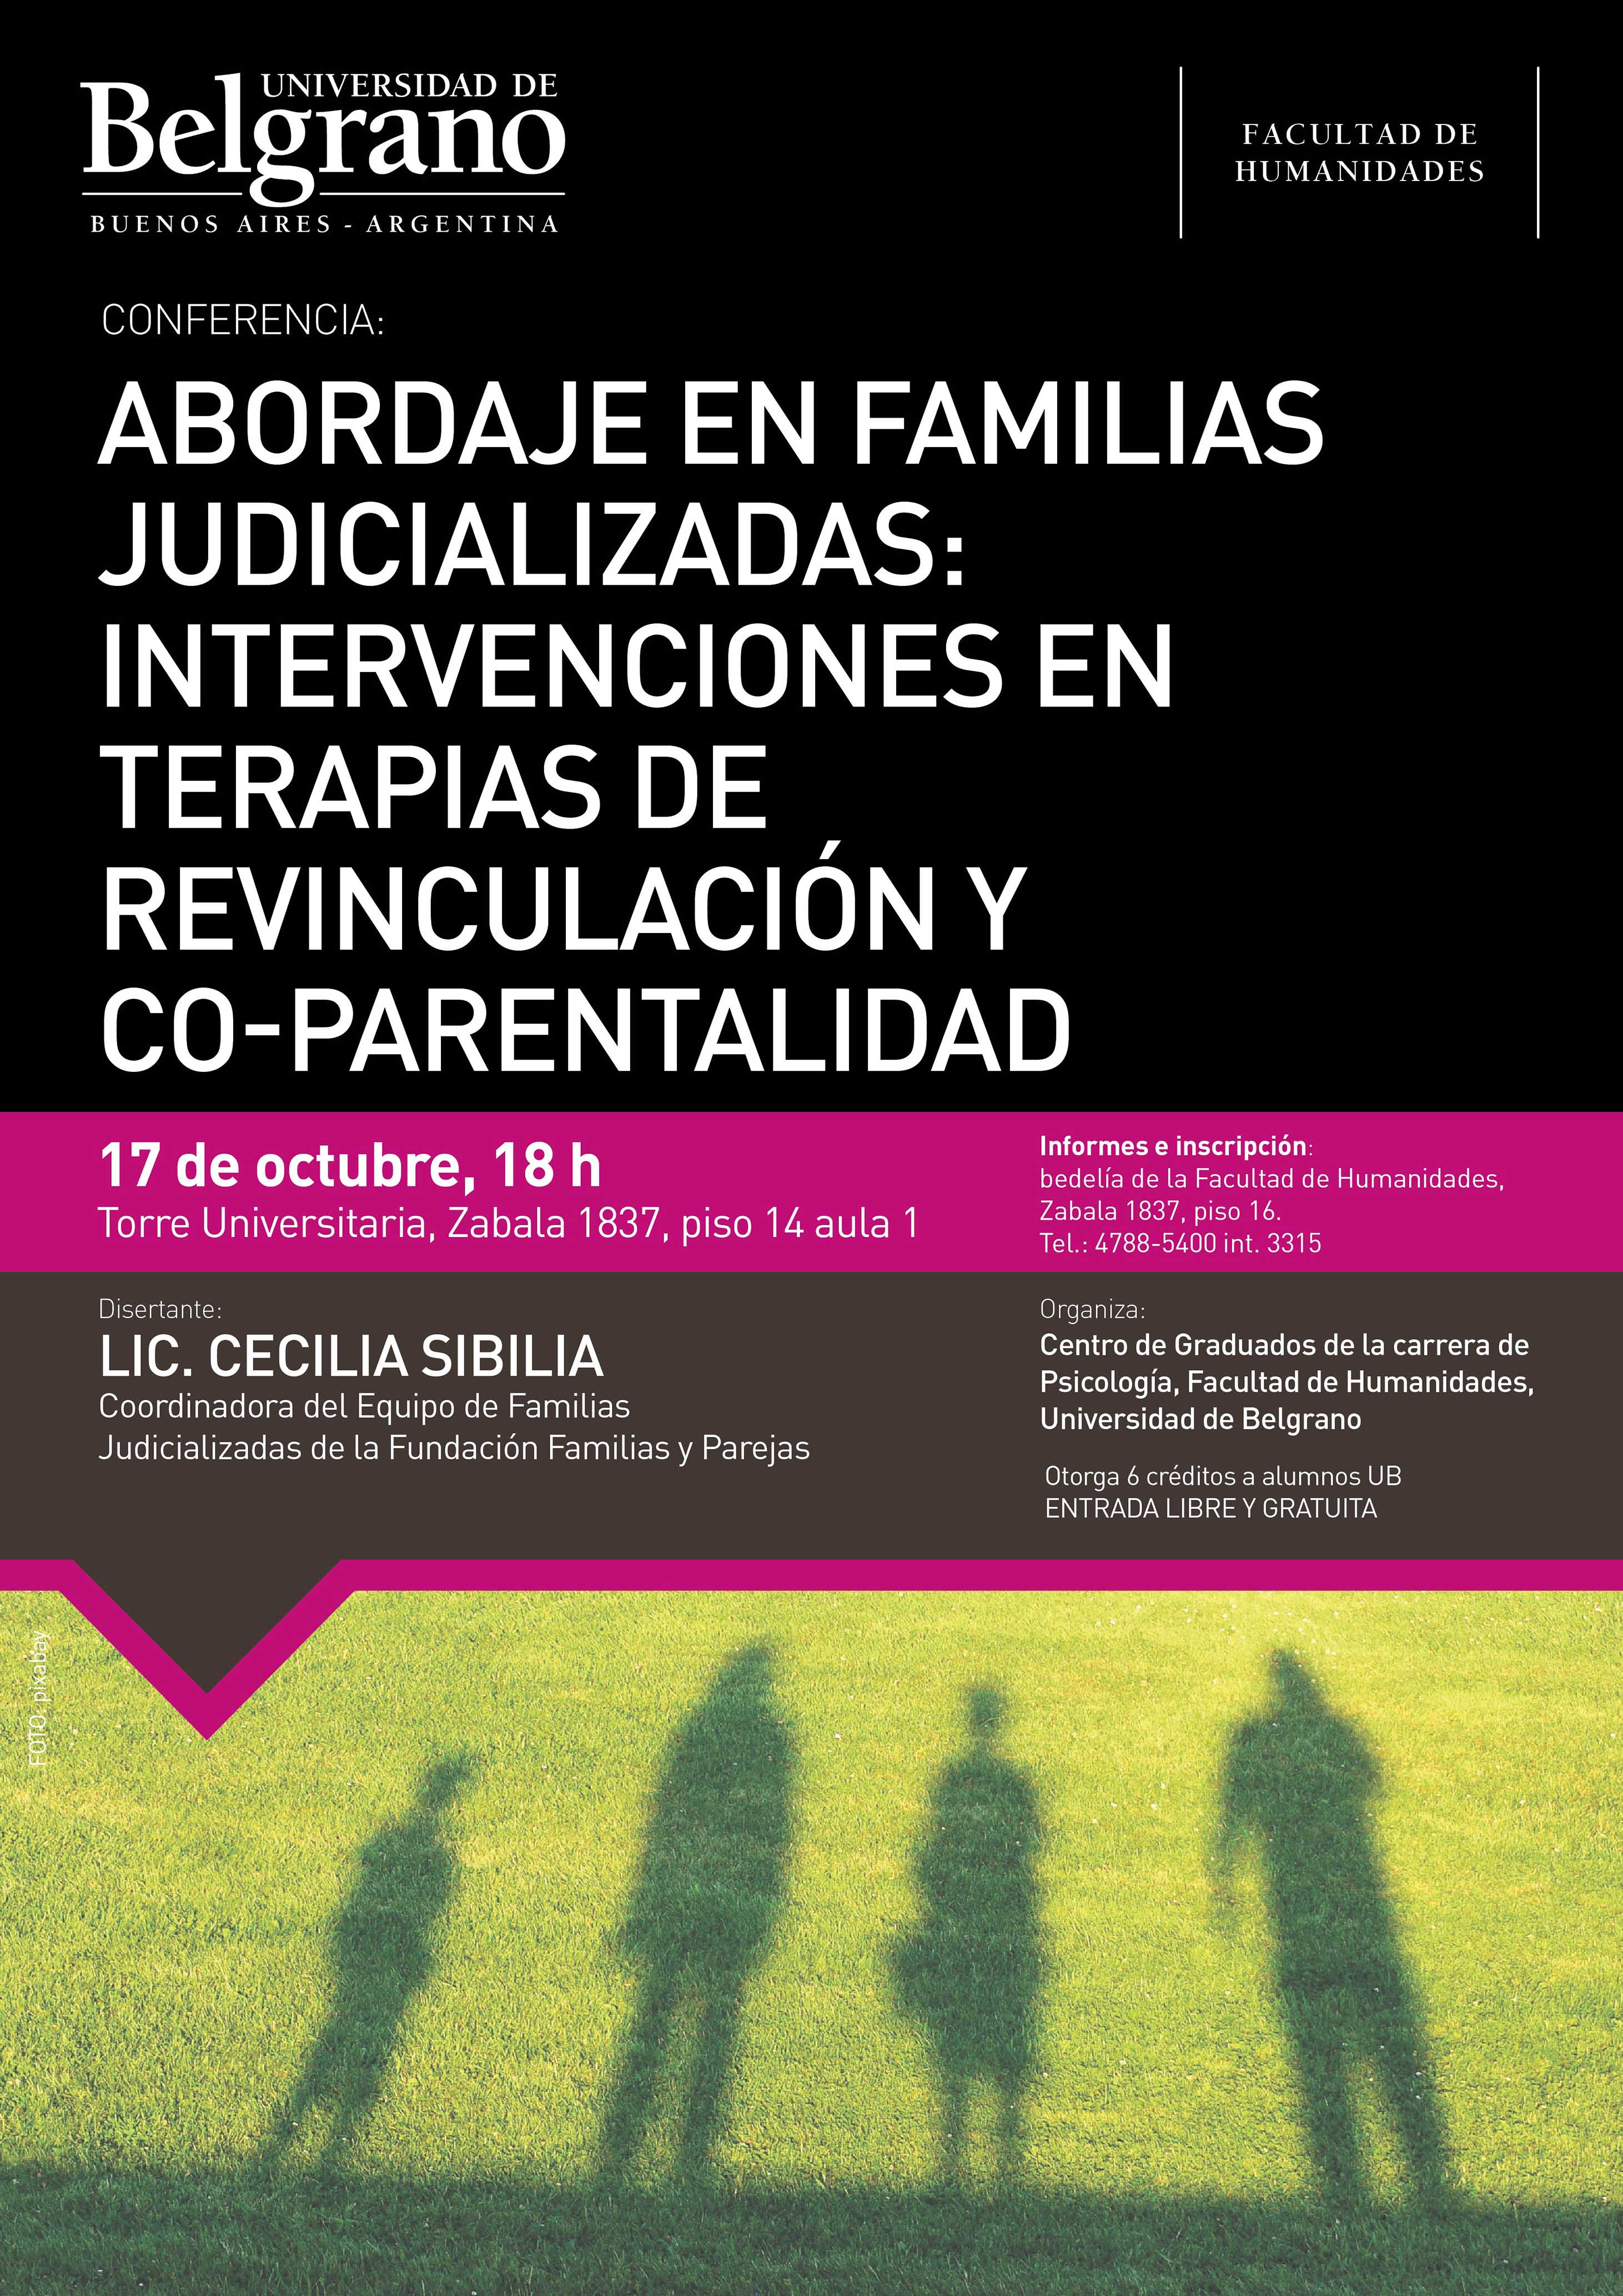 Universidad de Belgrano | Facultad de Humanidades | Abordaje en Familias Judicializadas